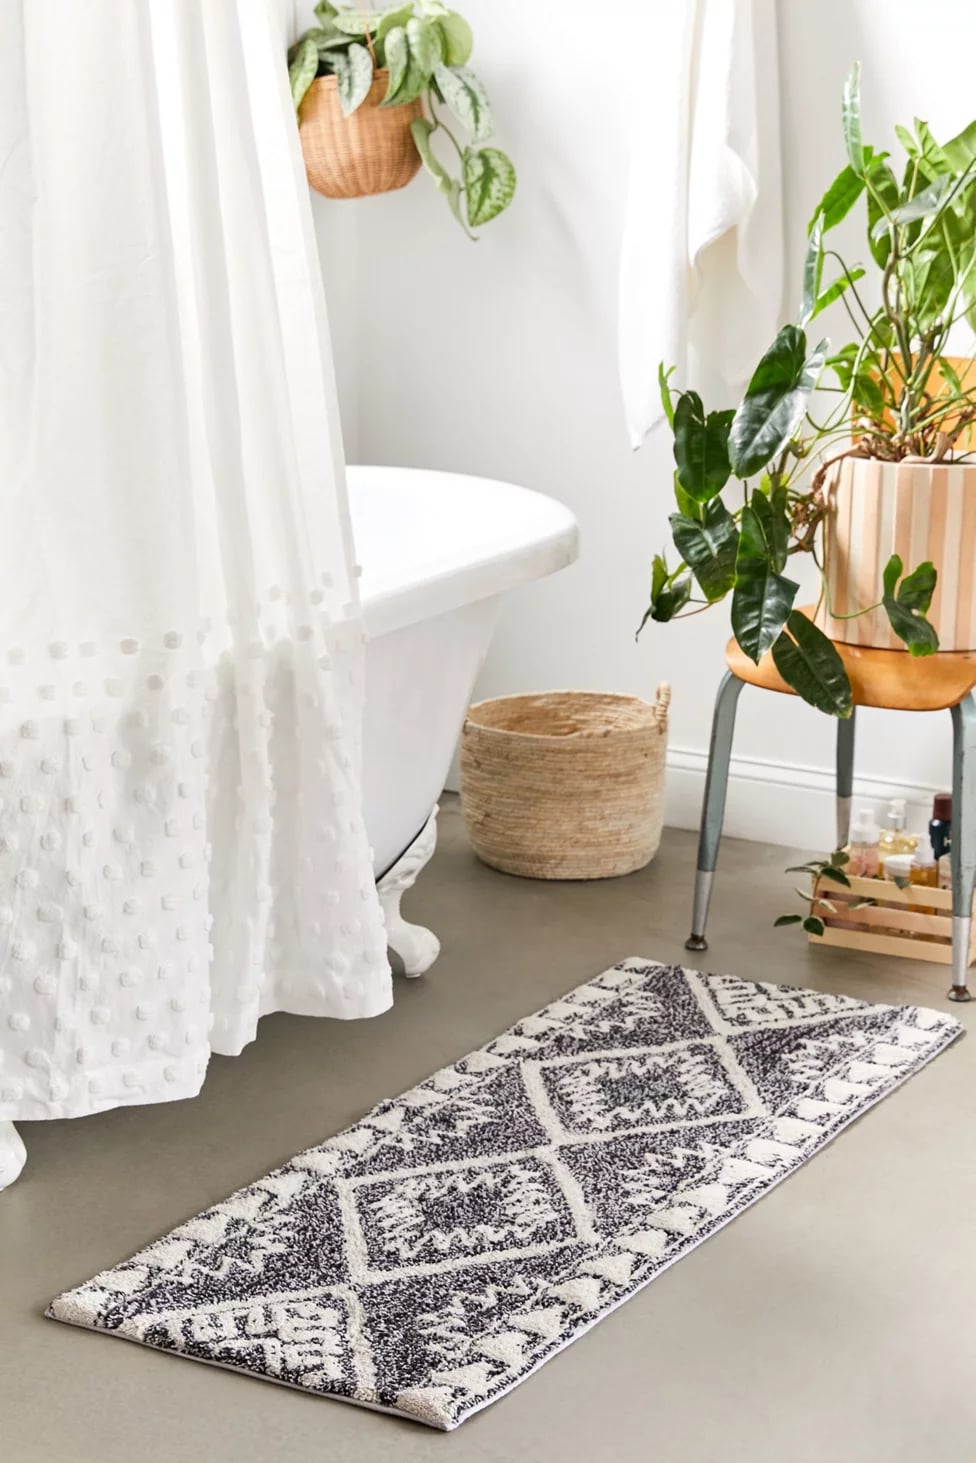 Cute bath mat  Long bathroom rugs, Small bathroom rug, Cute bath mats